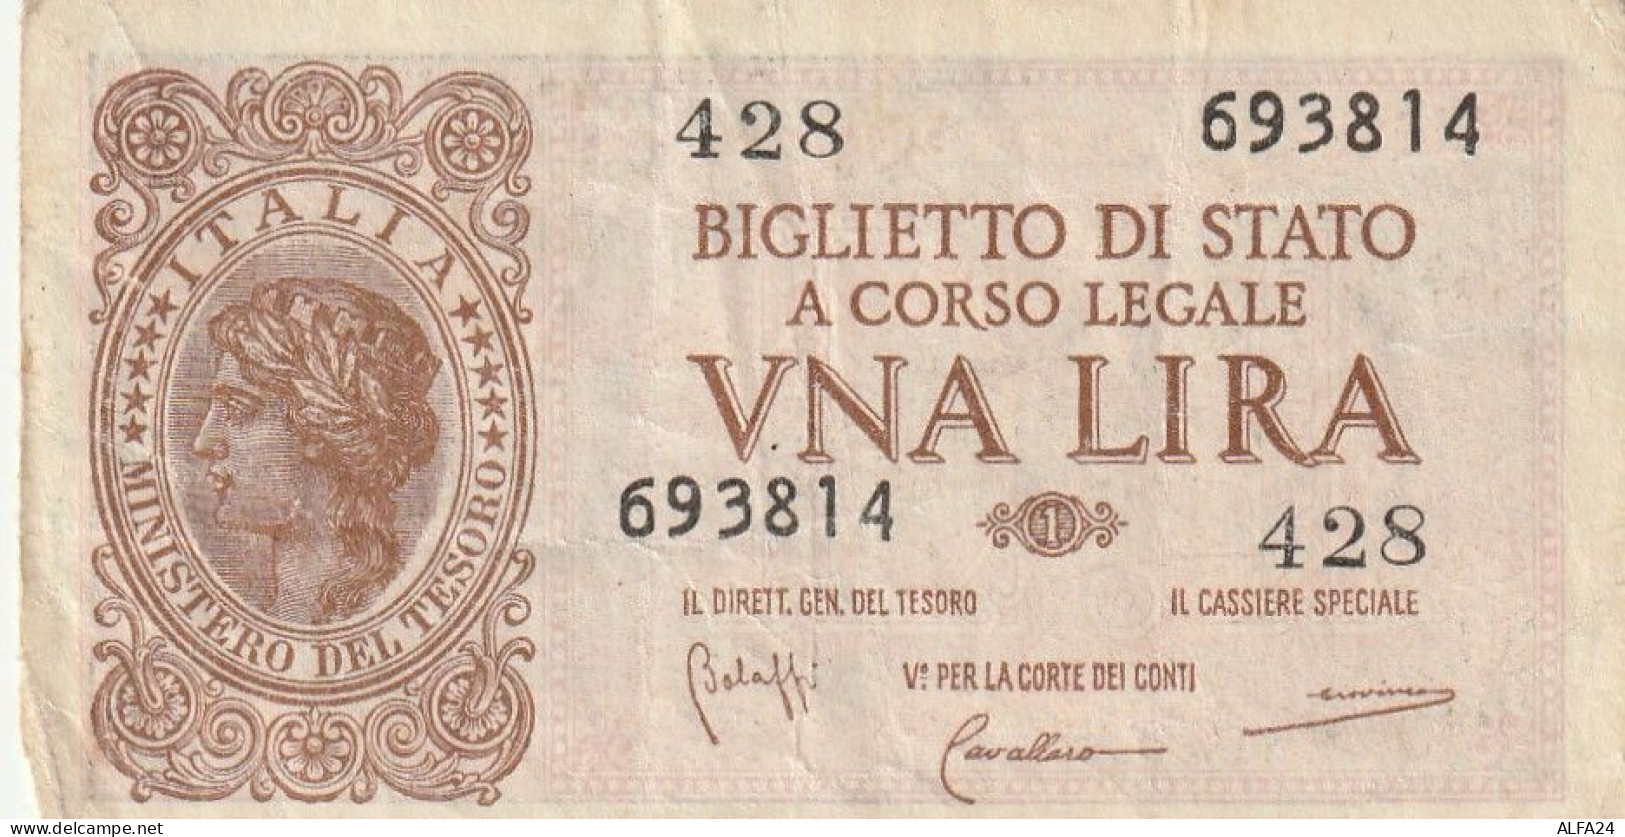 BANCONOTA BIGLIETTO DI STATO ITALIA 1 LIRA VF  (B_355 - Italia – 1 Lira